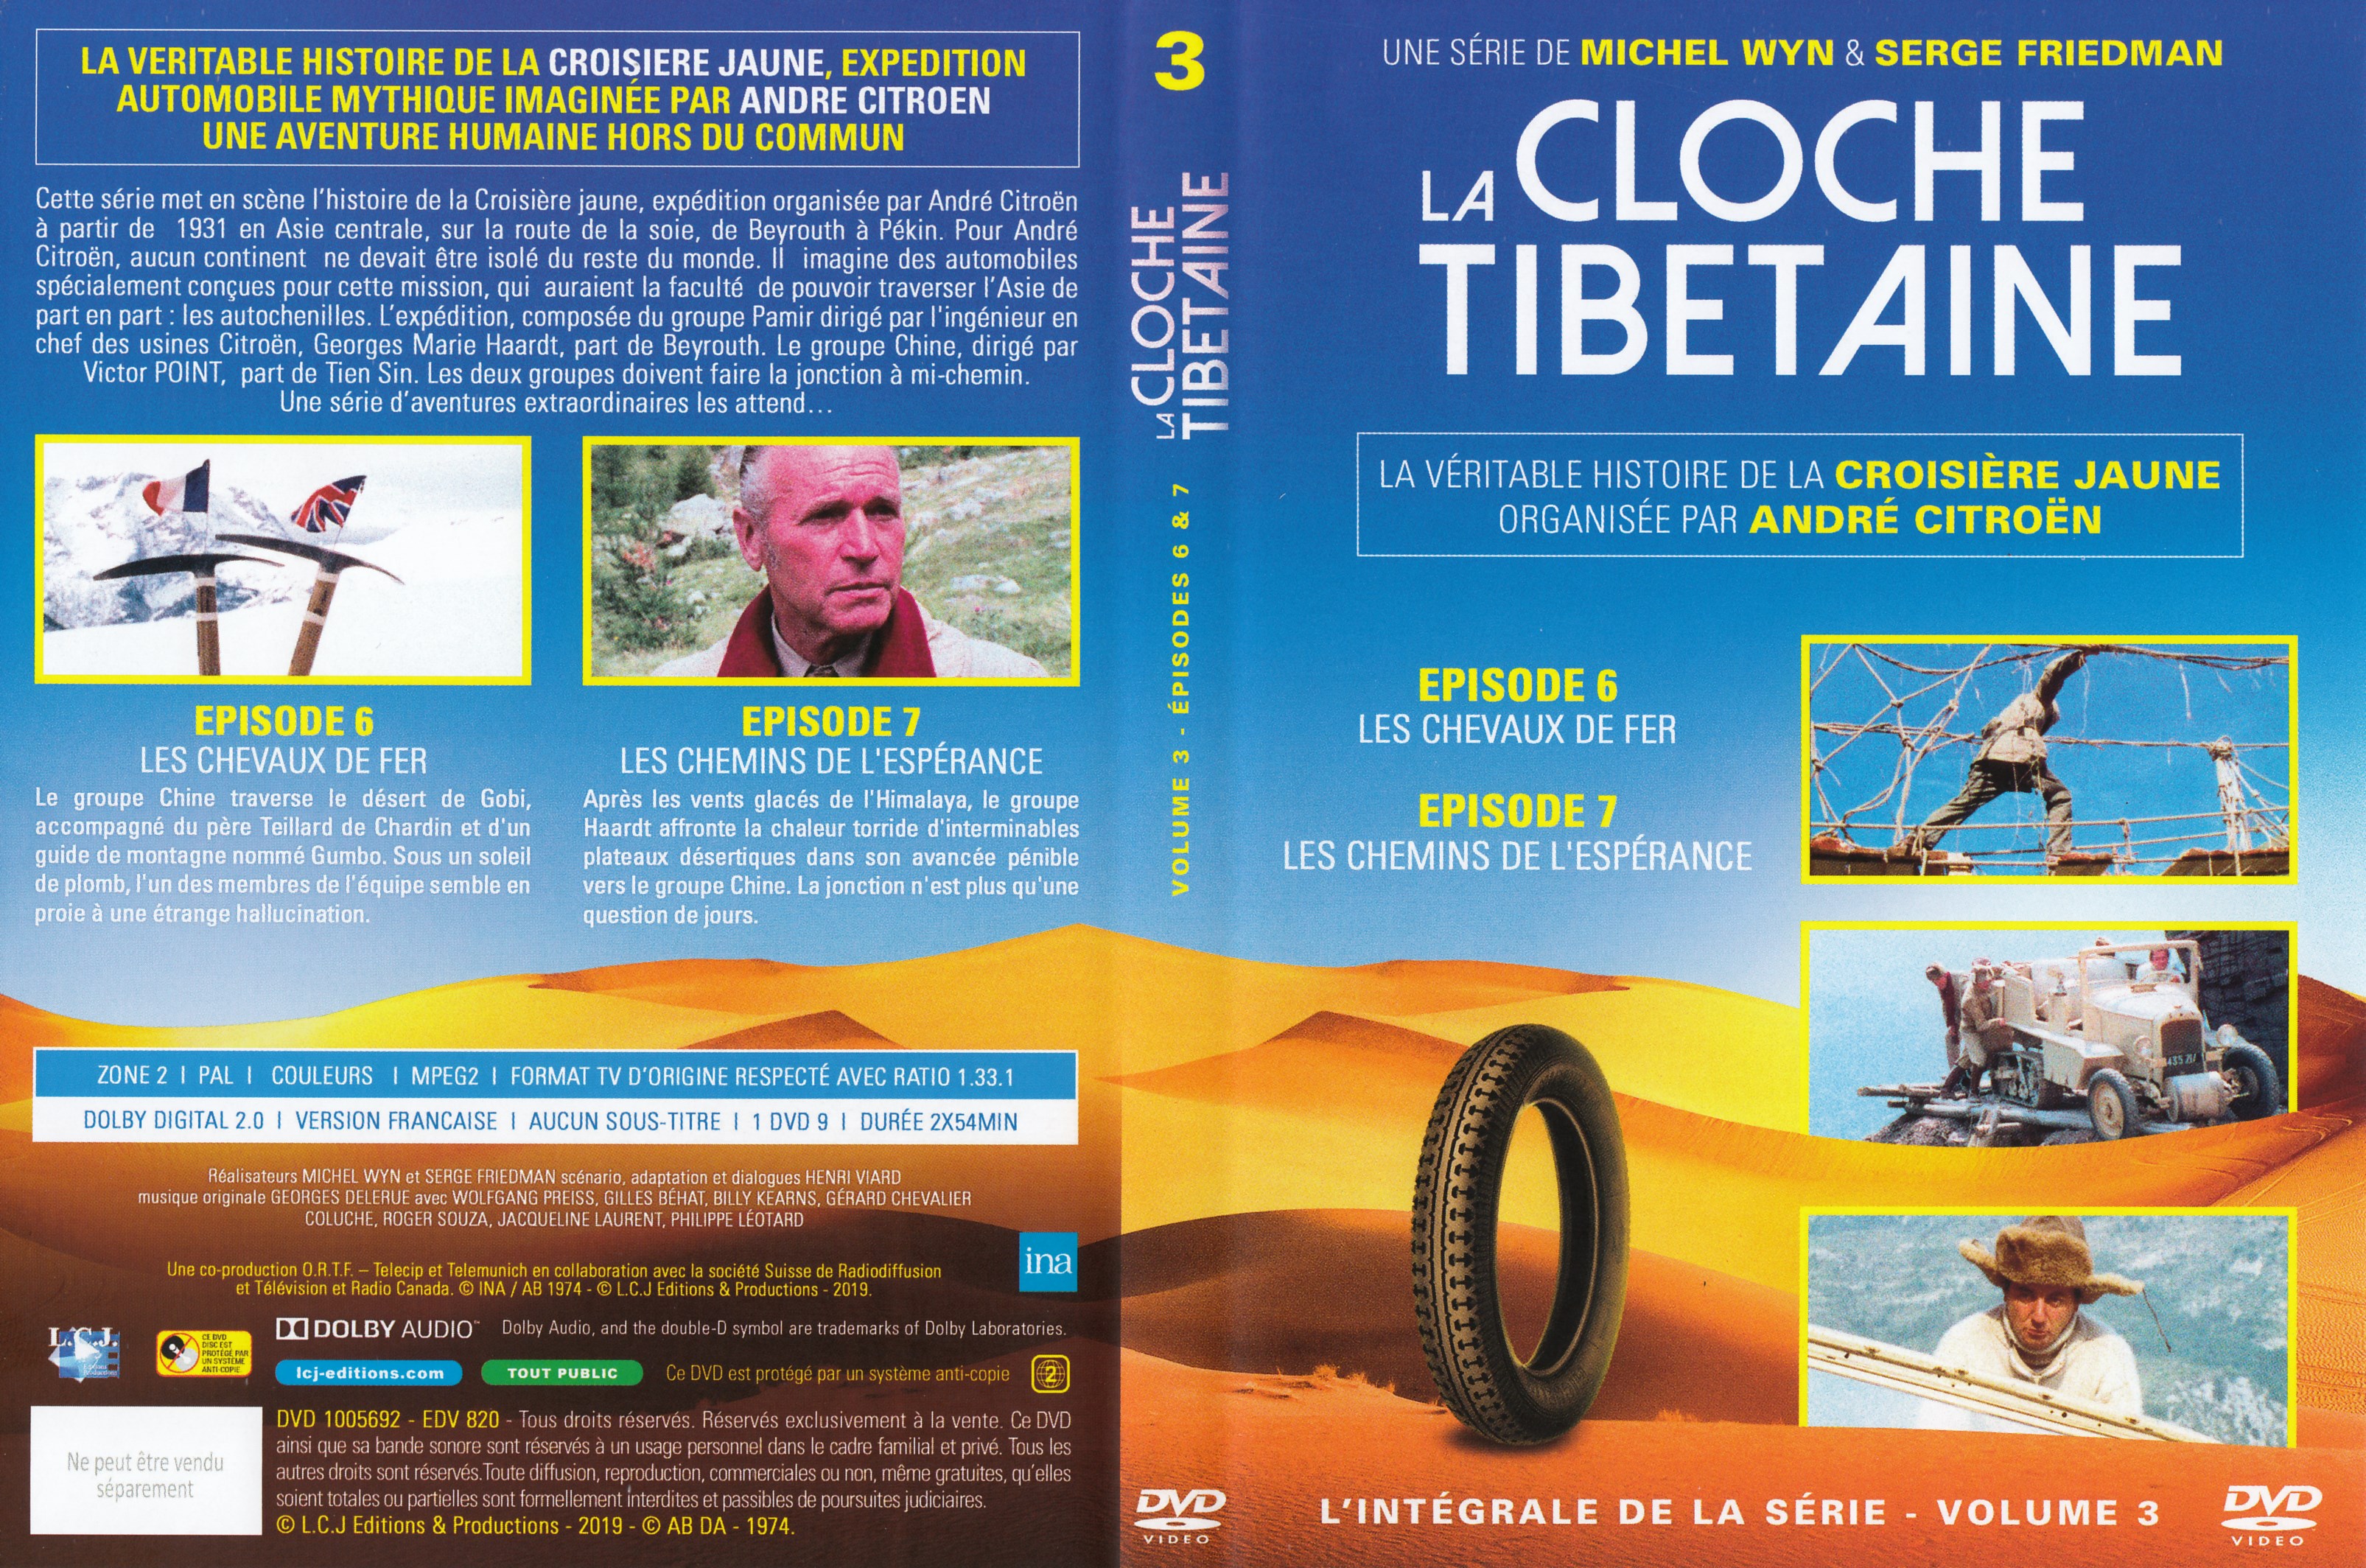 Jaquette DVD La cloche Tibetaine vol 3